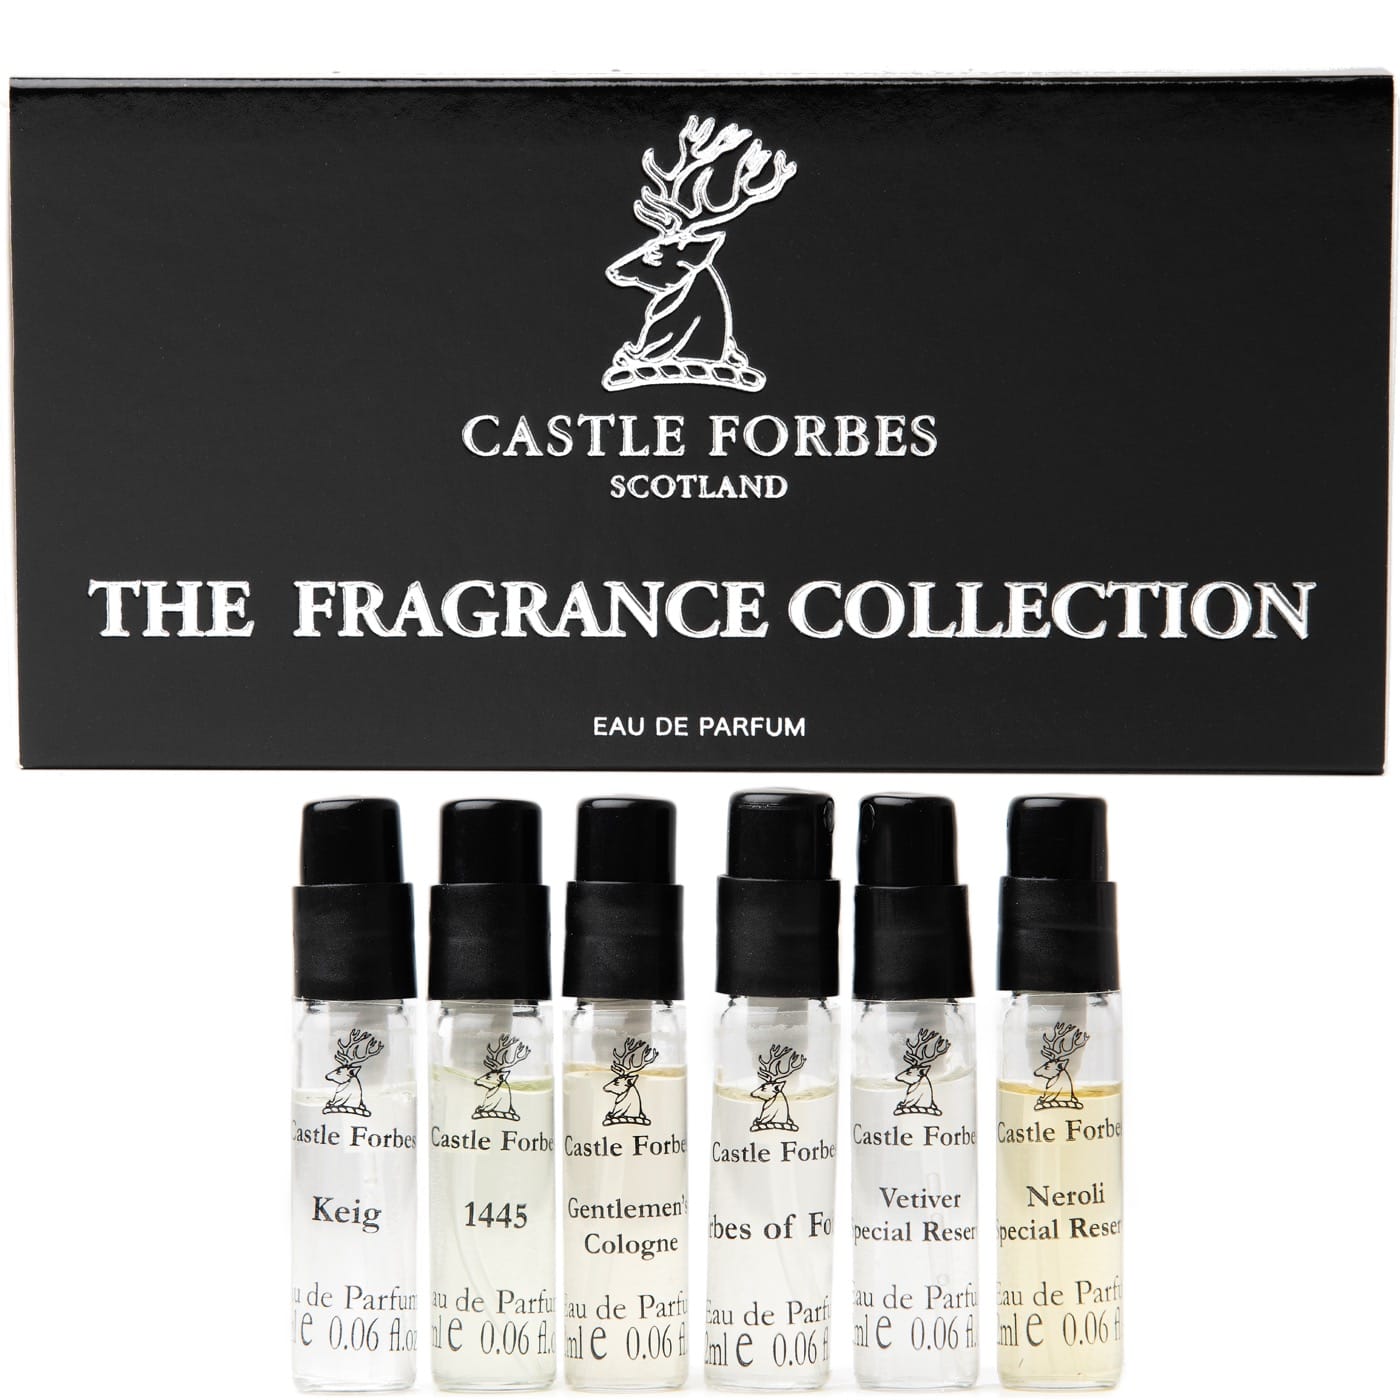 The Fragrance Collection Eau de Parfum discovery set - 6 x 2ml